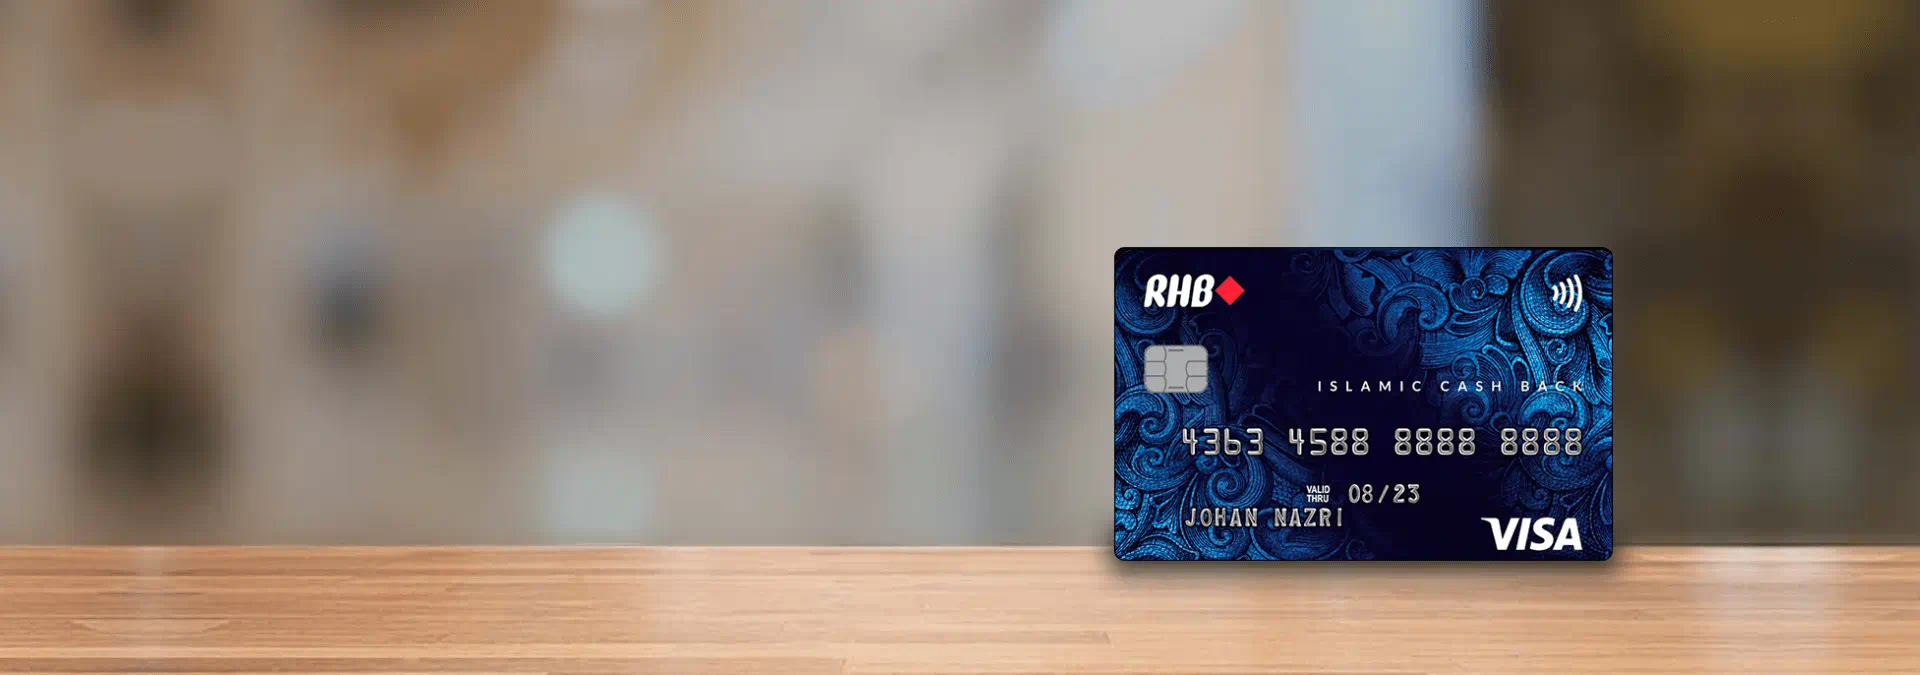 rhb-visa-cash-back-credit-card-banner